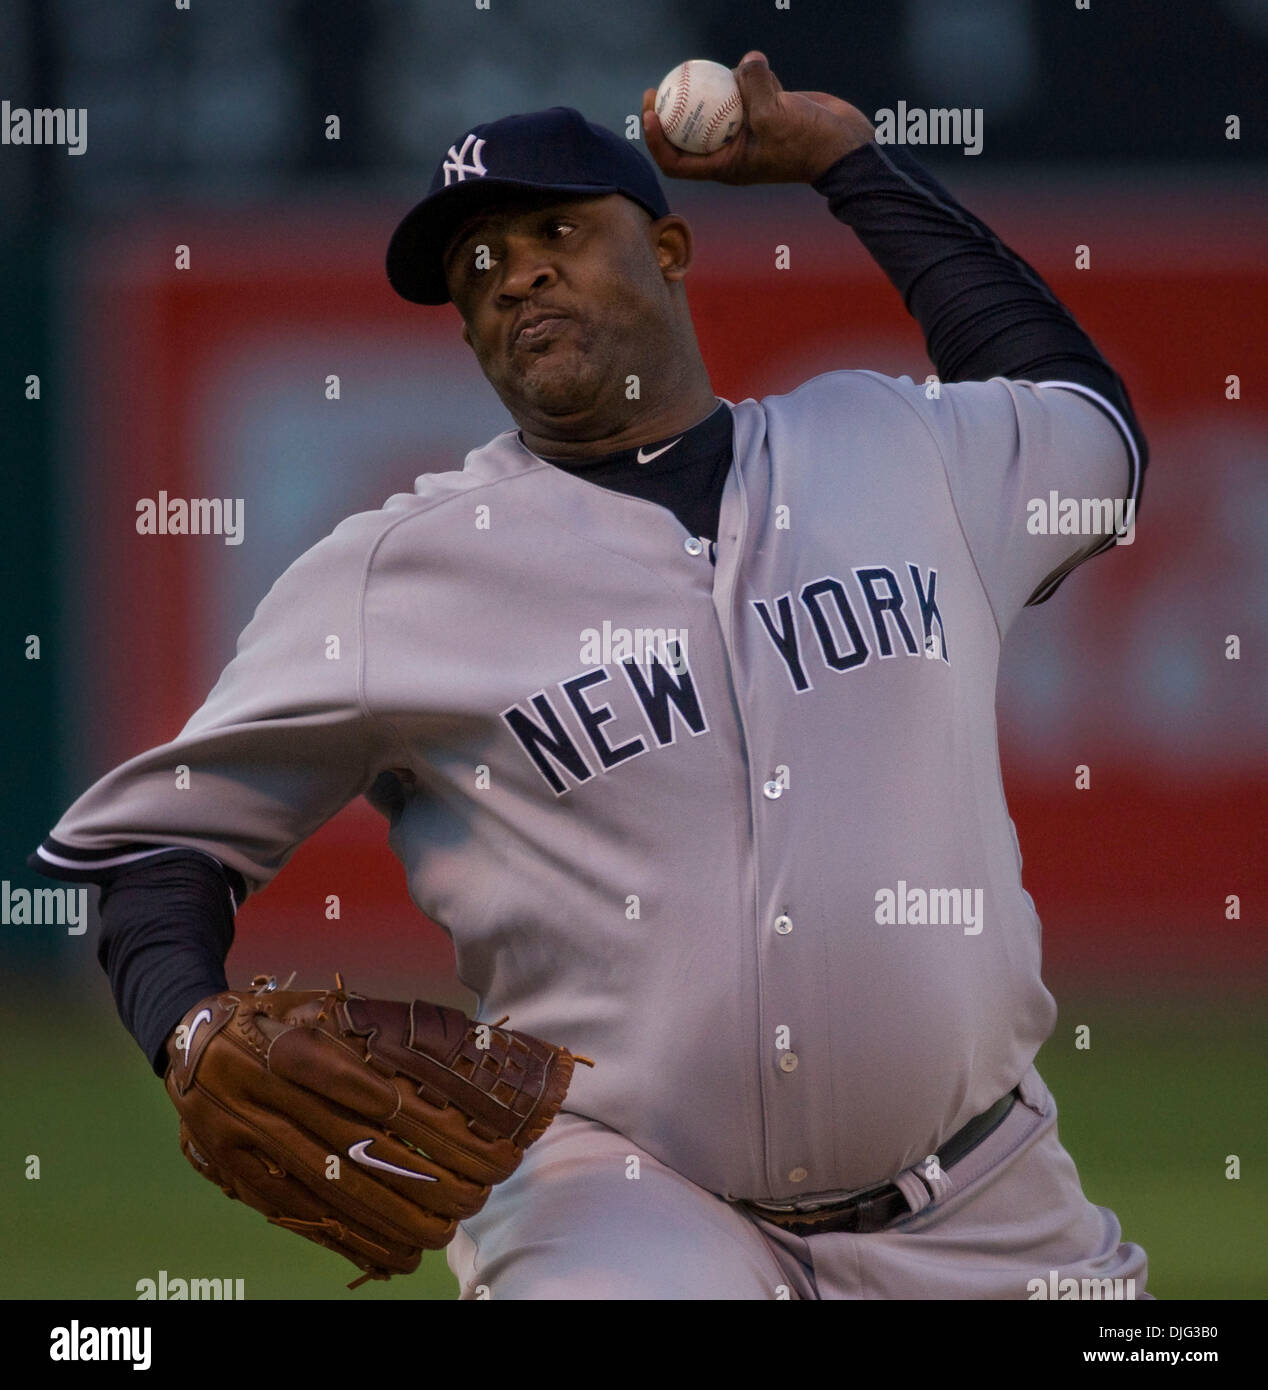 JUL 30, 2015: New York Yankees starting pitcher CC Sabathia #52